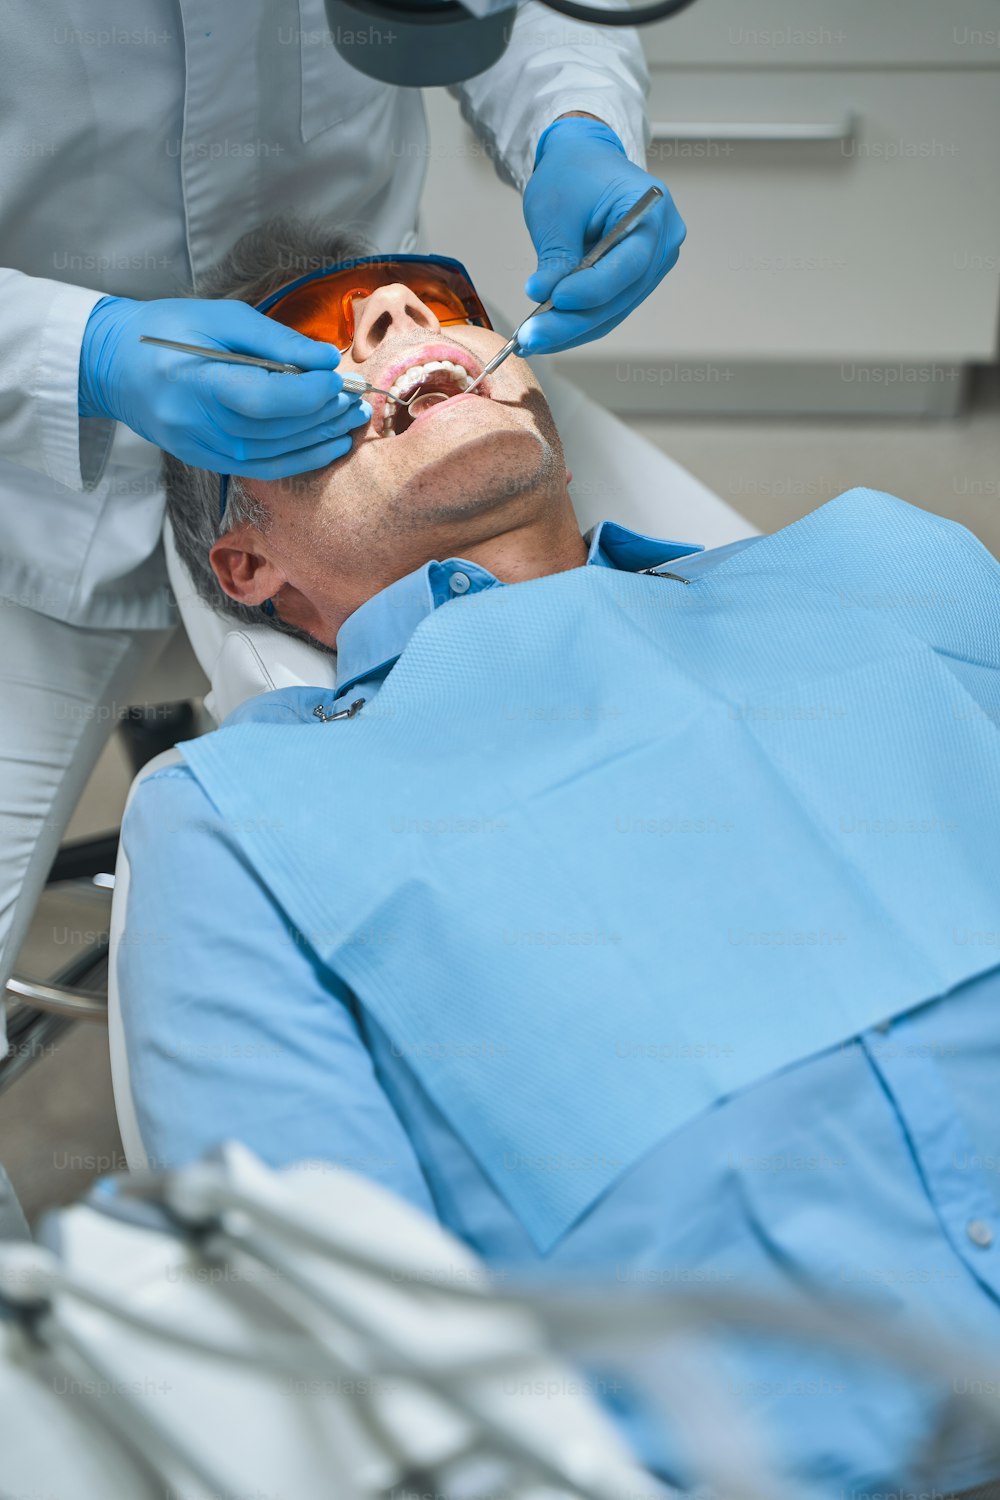 El hombre está acostado en el sillón dental y está siendo tratado por el dentista con espejo y explorador